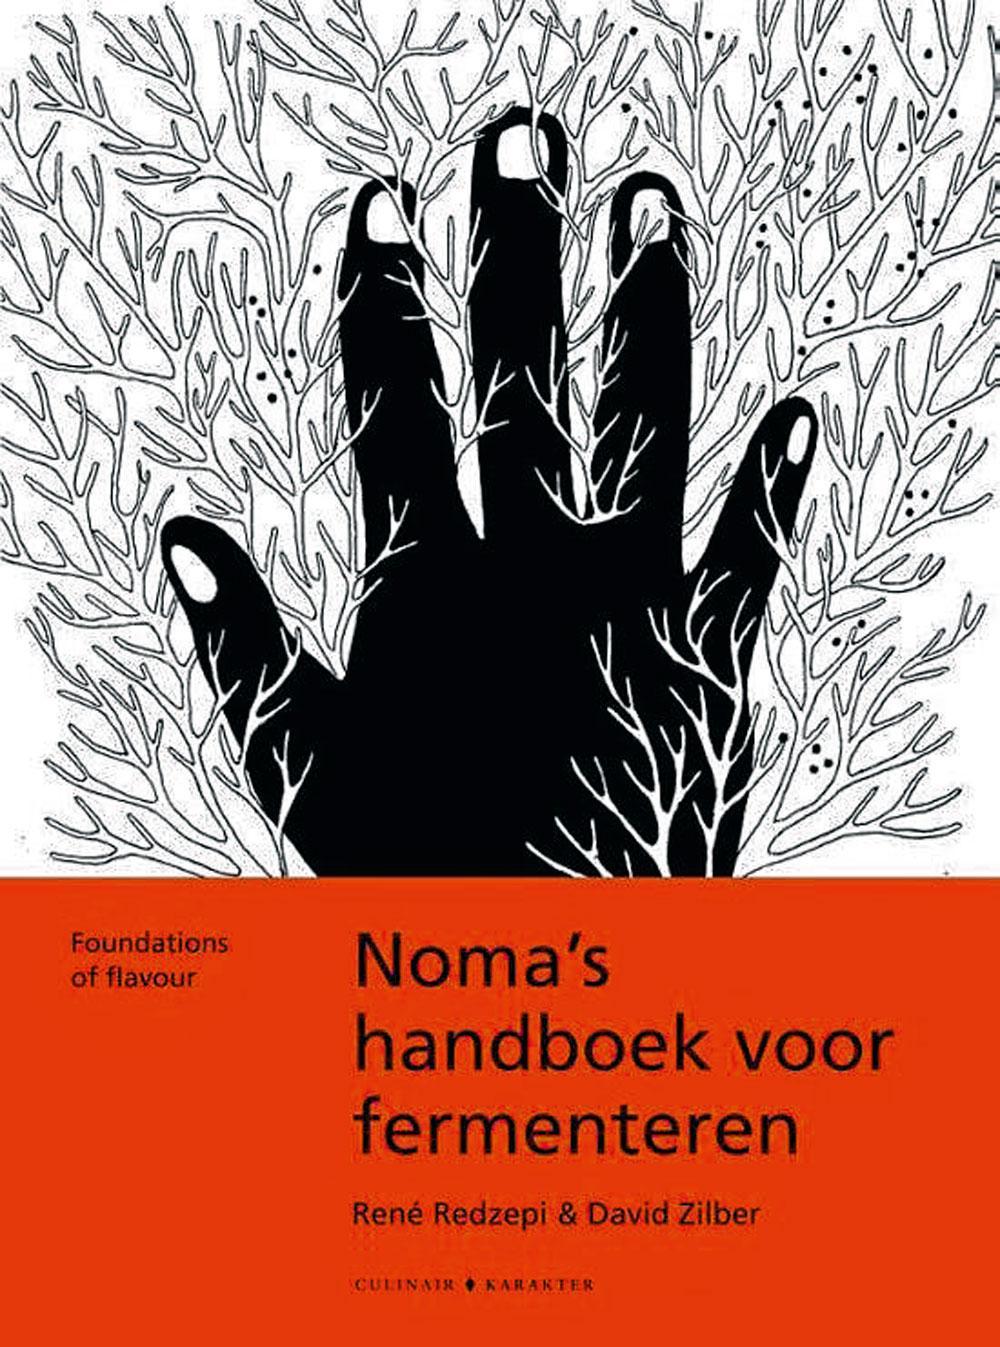 Noma's handboek voor fermenteren, René Redzepi & David Zilber, Karakter Uitgevers B.V., 39,99 euro.